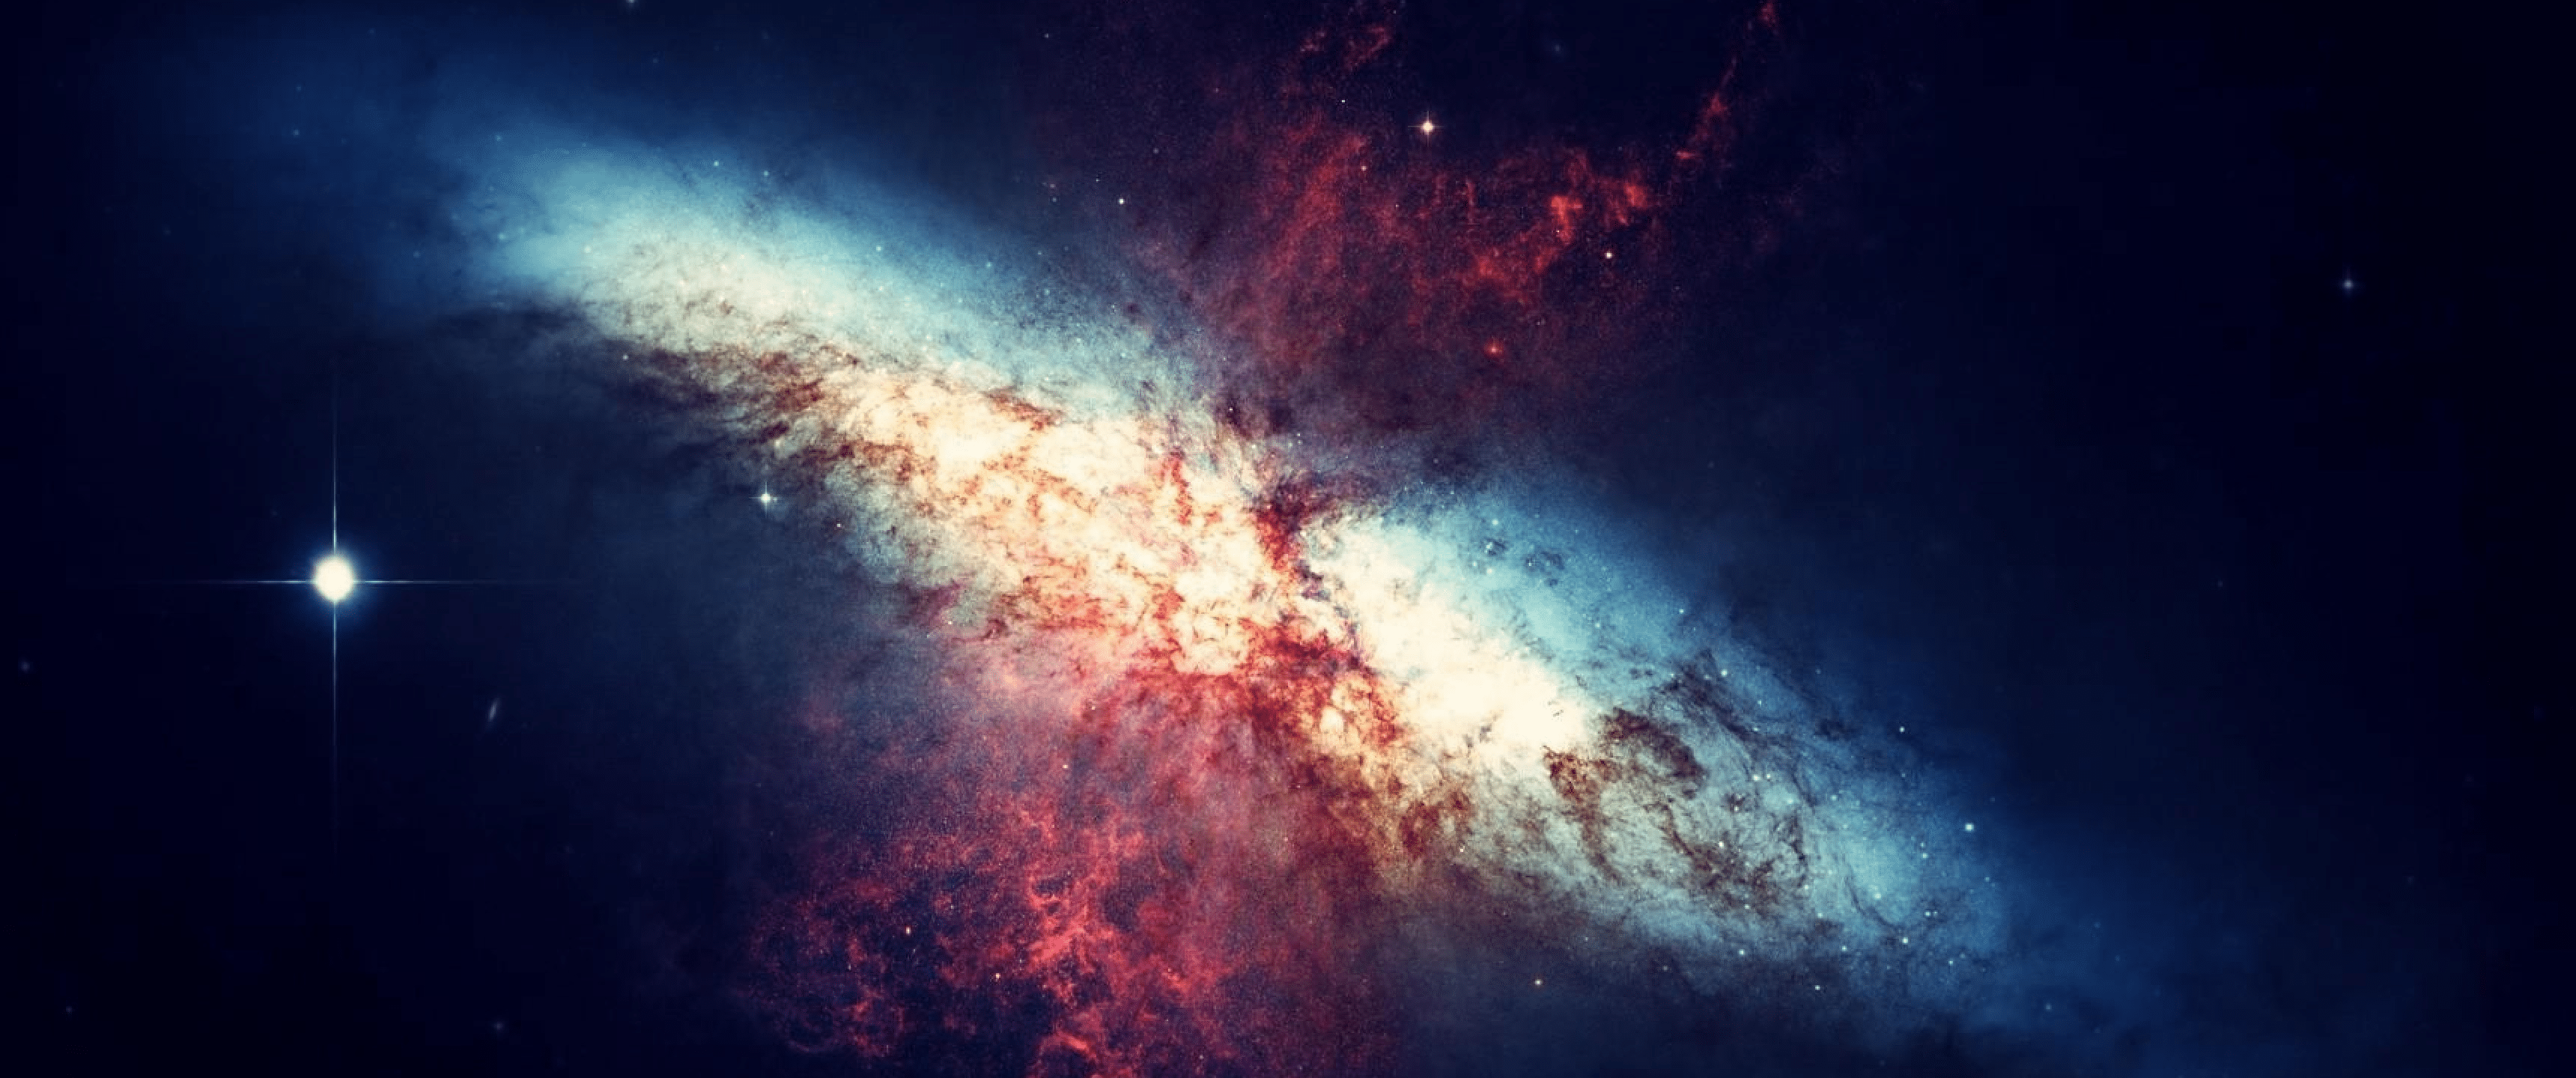 Nebula: Những hình ảnh vũ trụ đầy màu sắc và độc đáo. Thoả sức khám phá và đắm mình trong vô vàn hình dáng và màu sắc của các tổ hợp khí quyển.